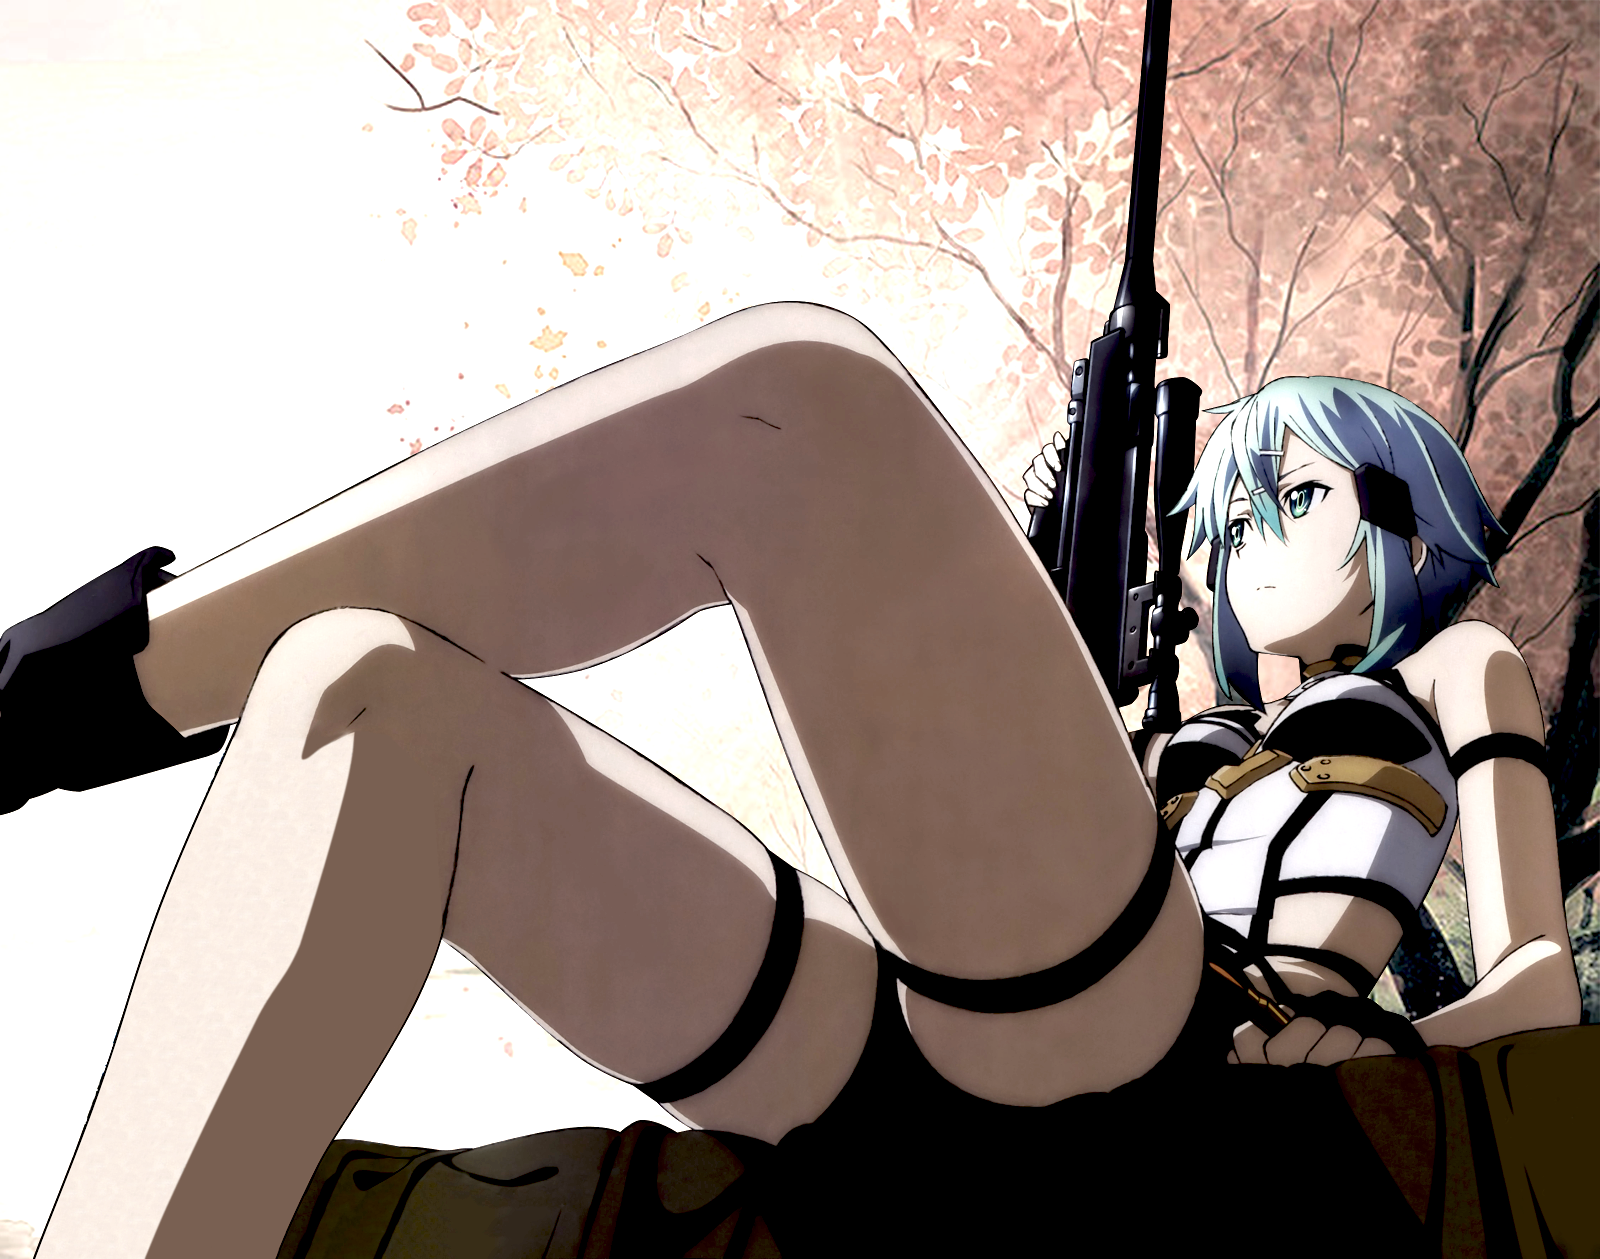 Anime 1600x1259 Sword Art Online anime anime girls sniper rifle legs crossed weapon legs